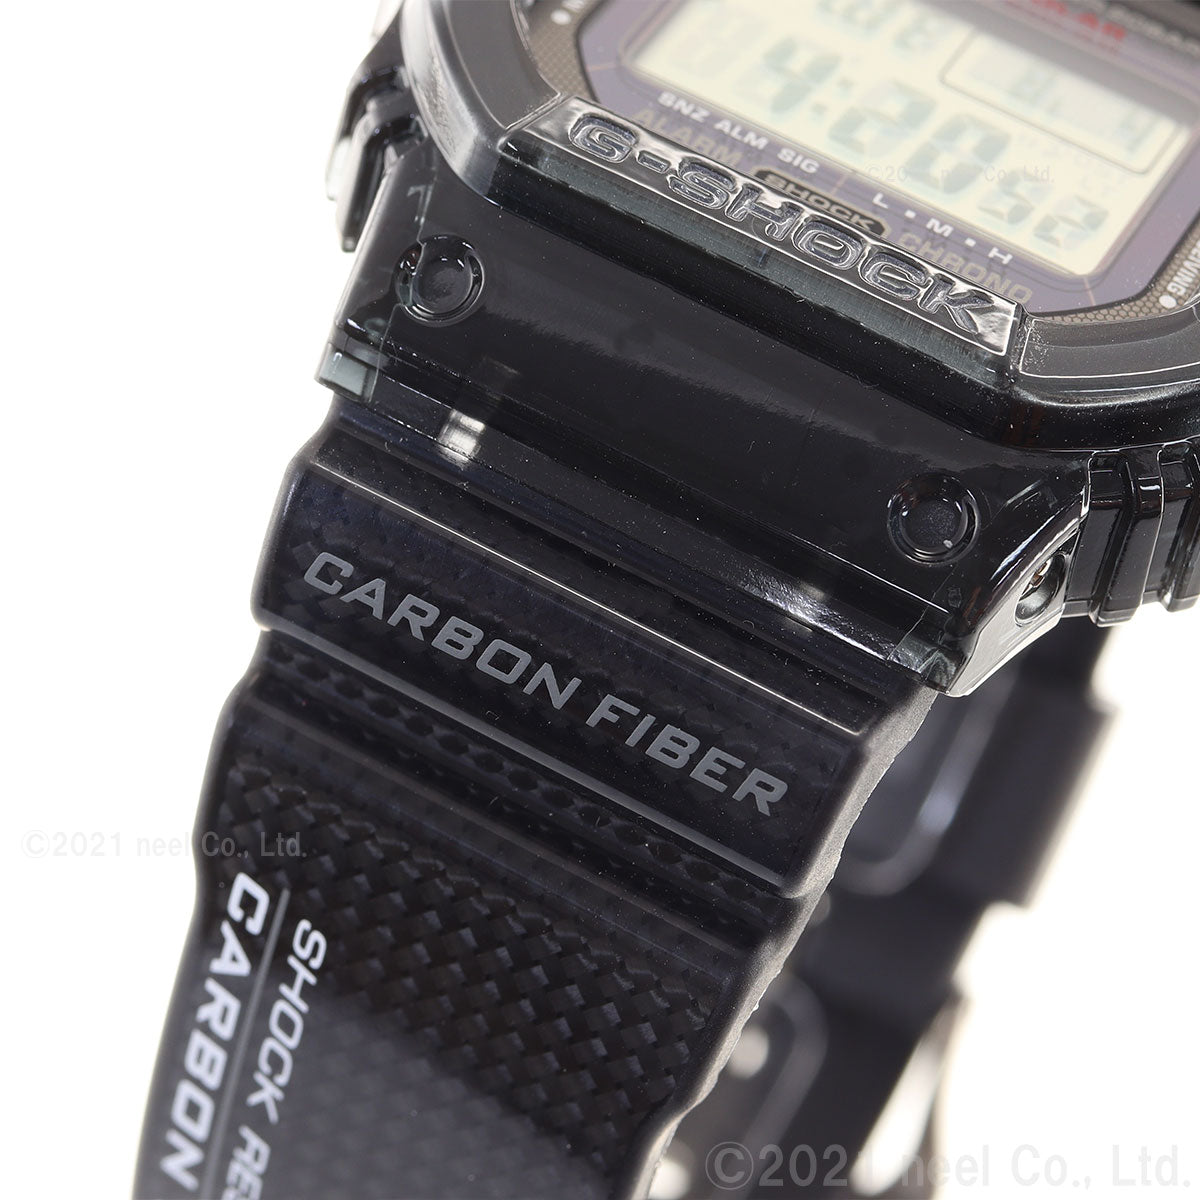 G-SHOCK Gショック GW-S5600U-1JF 電波 ソーラー 電波時計 5600 ブラック デジタル メンズ 腕時計 カシオ CASIO タフソーラー